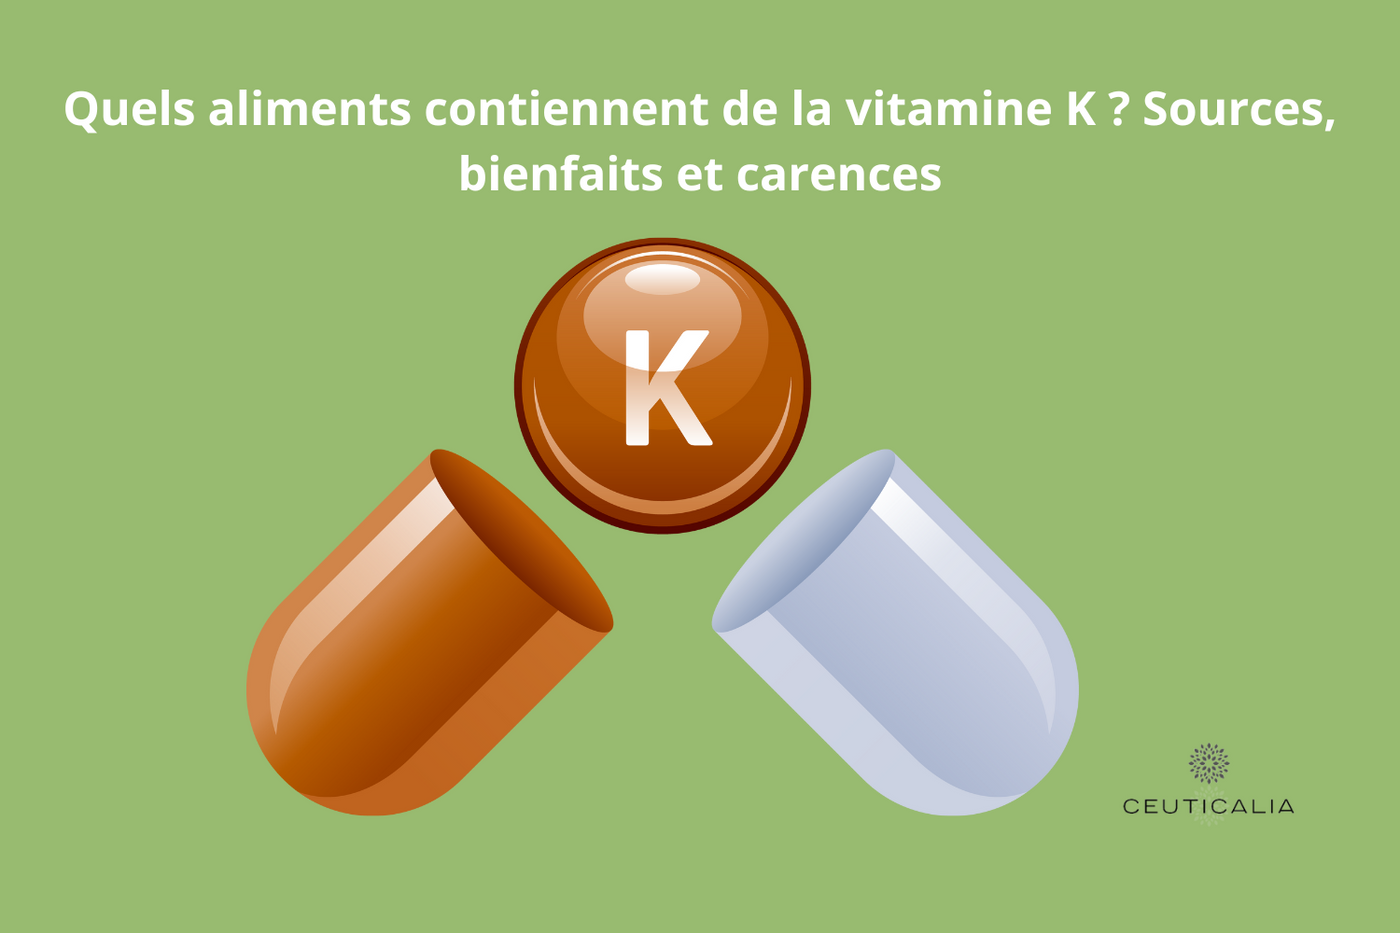 Quels aliments contiennent de la vitamine K ? Sources, bienfaits et carences